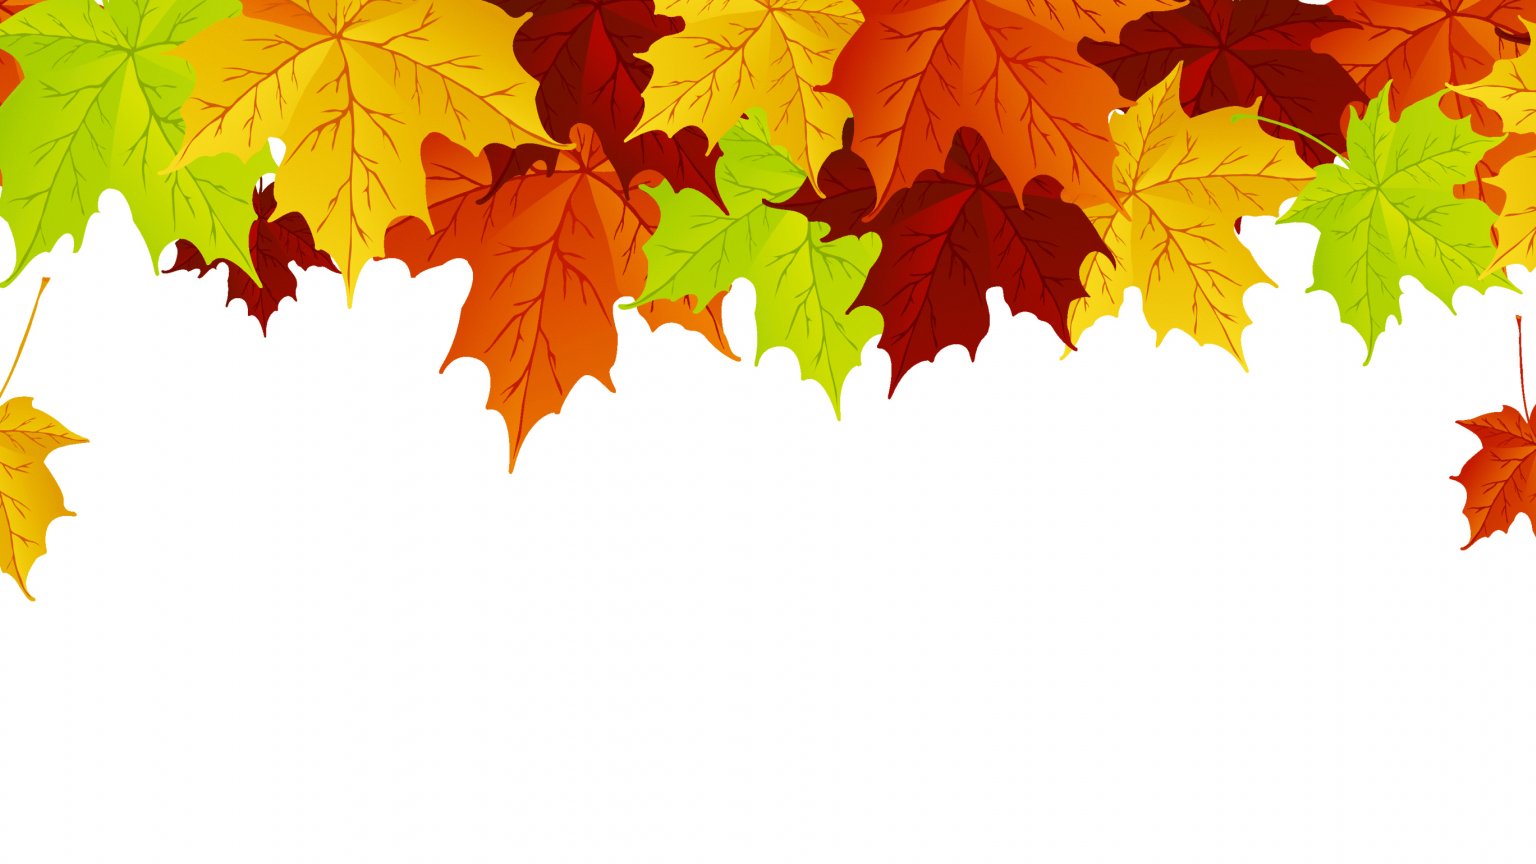 Осенние фоны png. Осенние листья на прозрачном фоне. Осенняя листва на прозрачном фоне. Осенние листья без фона. Клипарт осенние листья на прозрачном фоне.